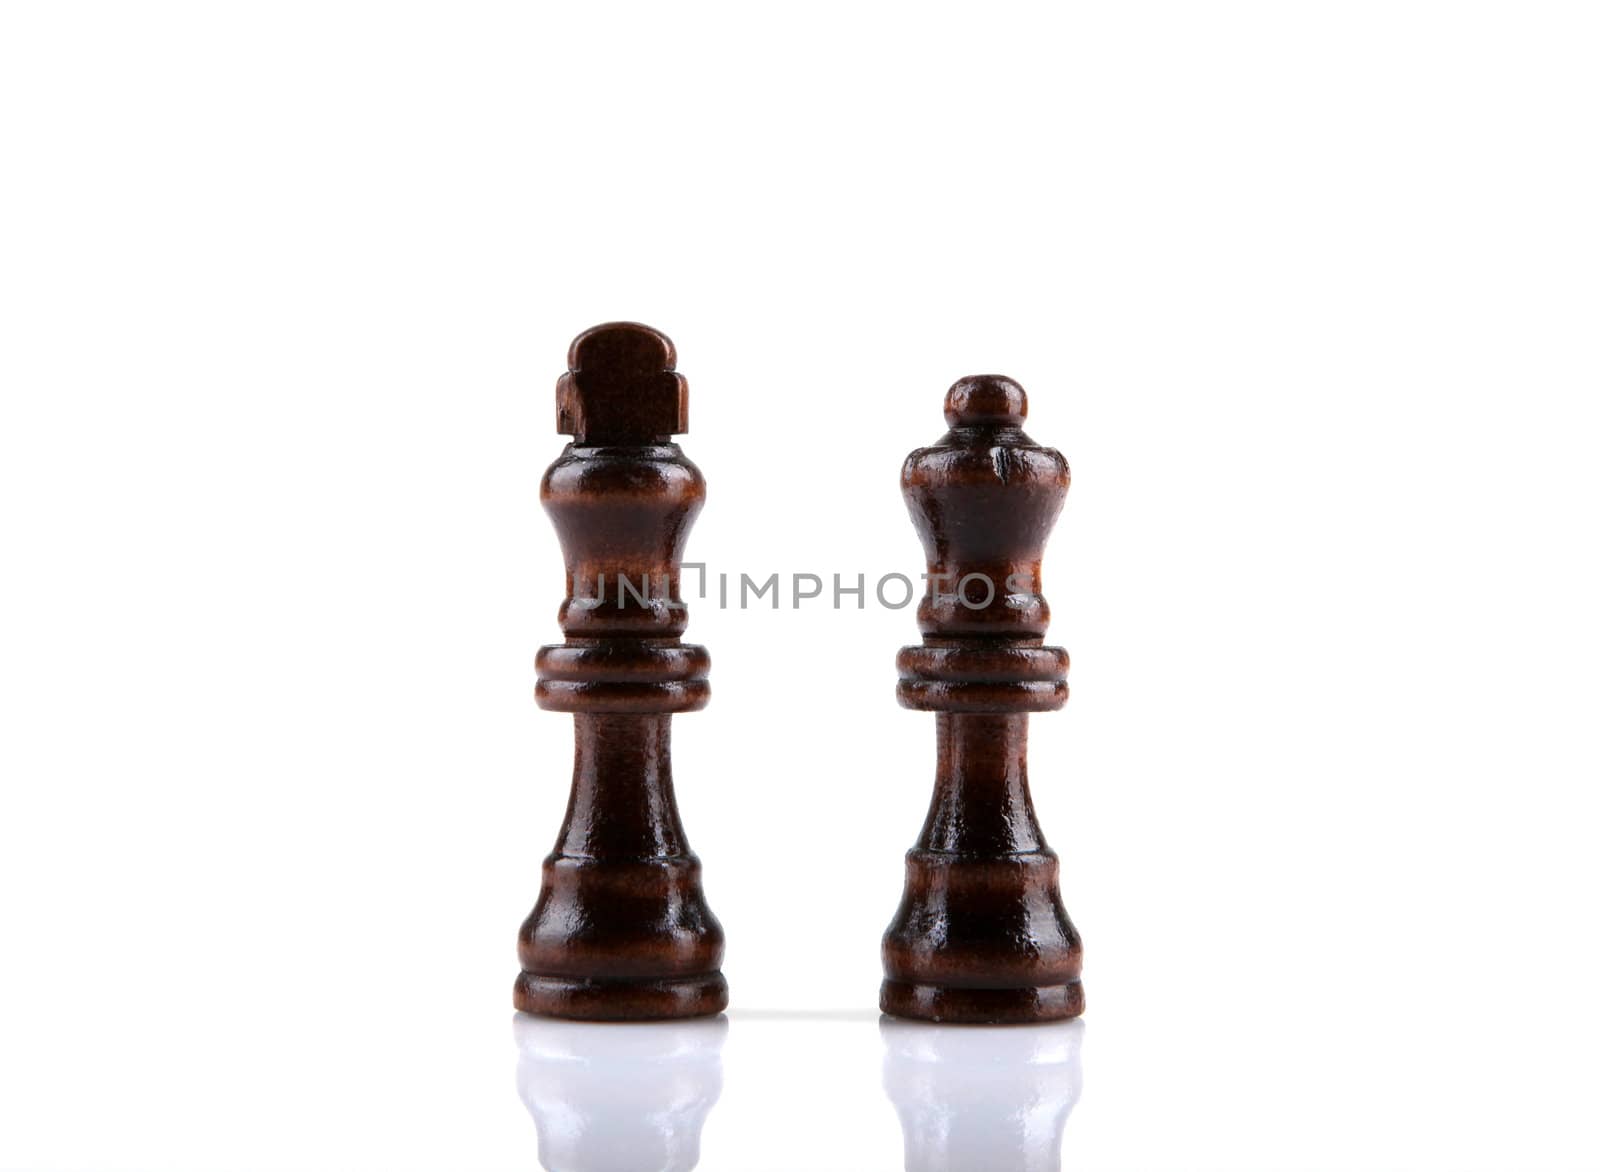 chess piece by nenov